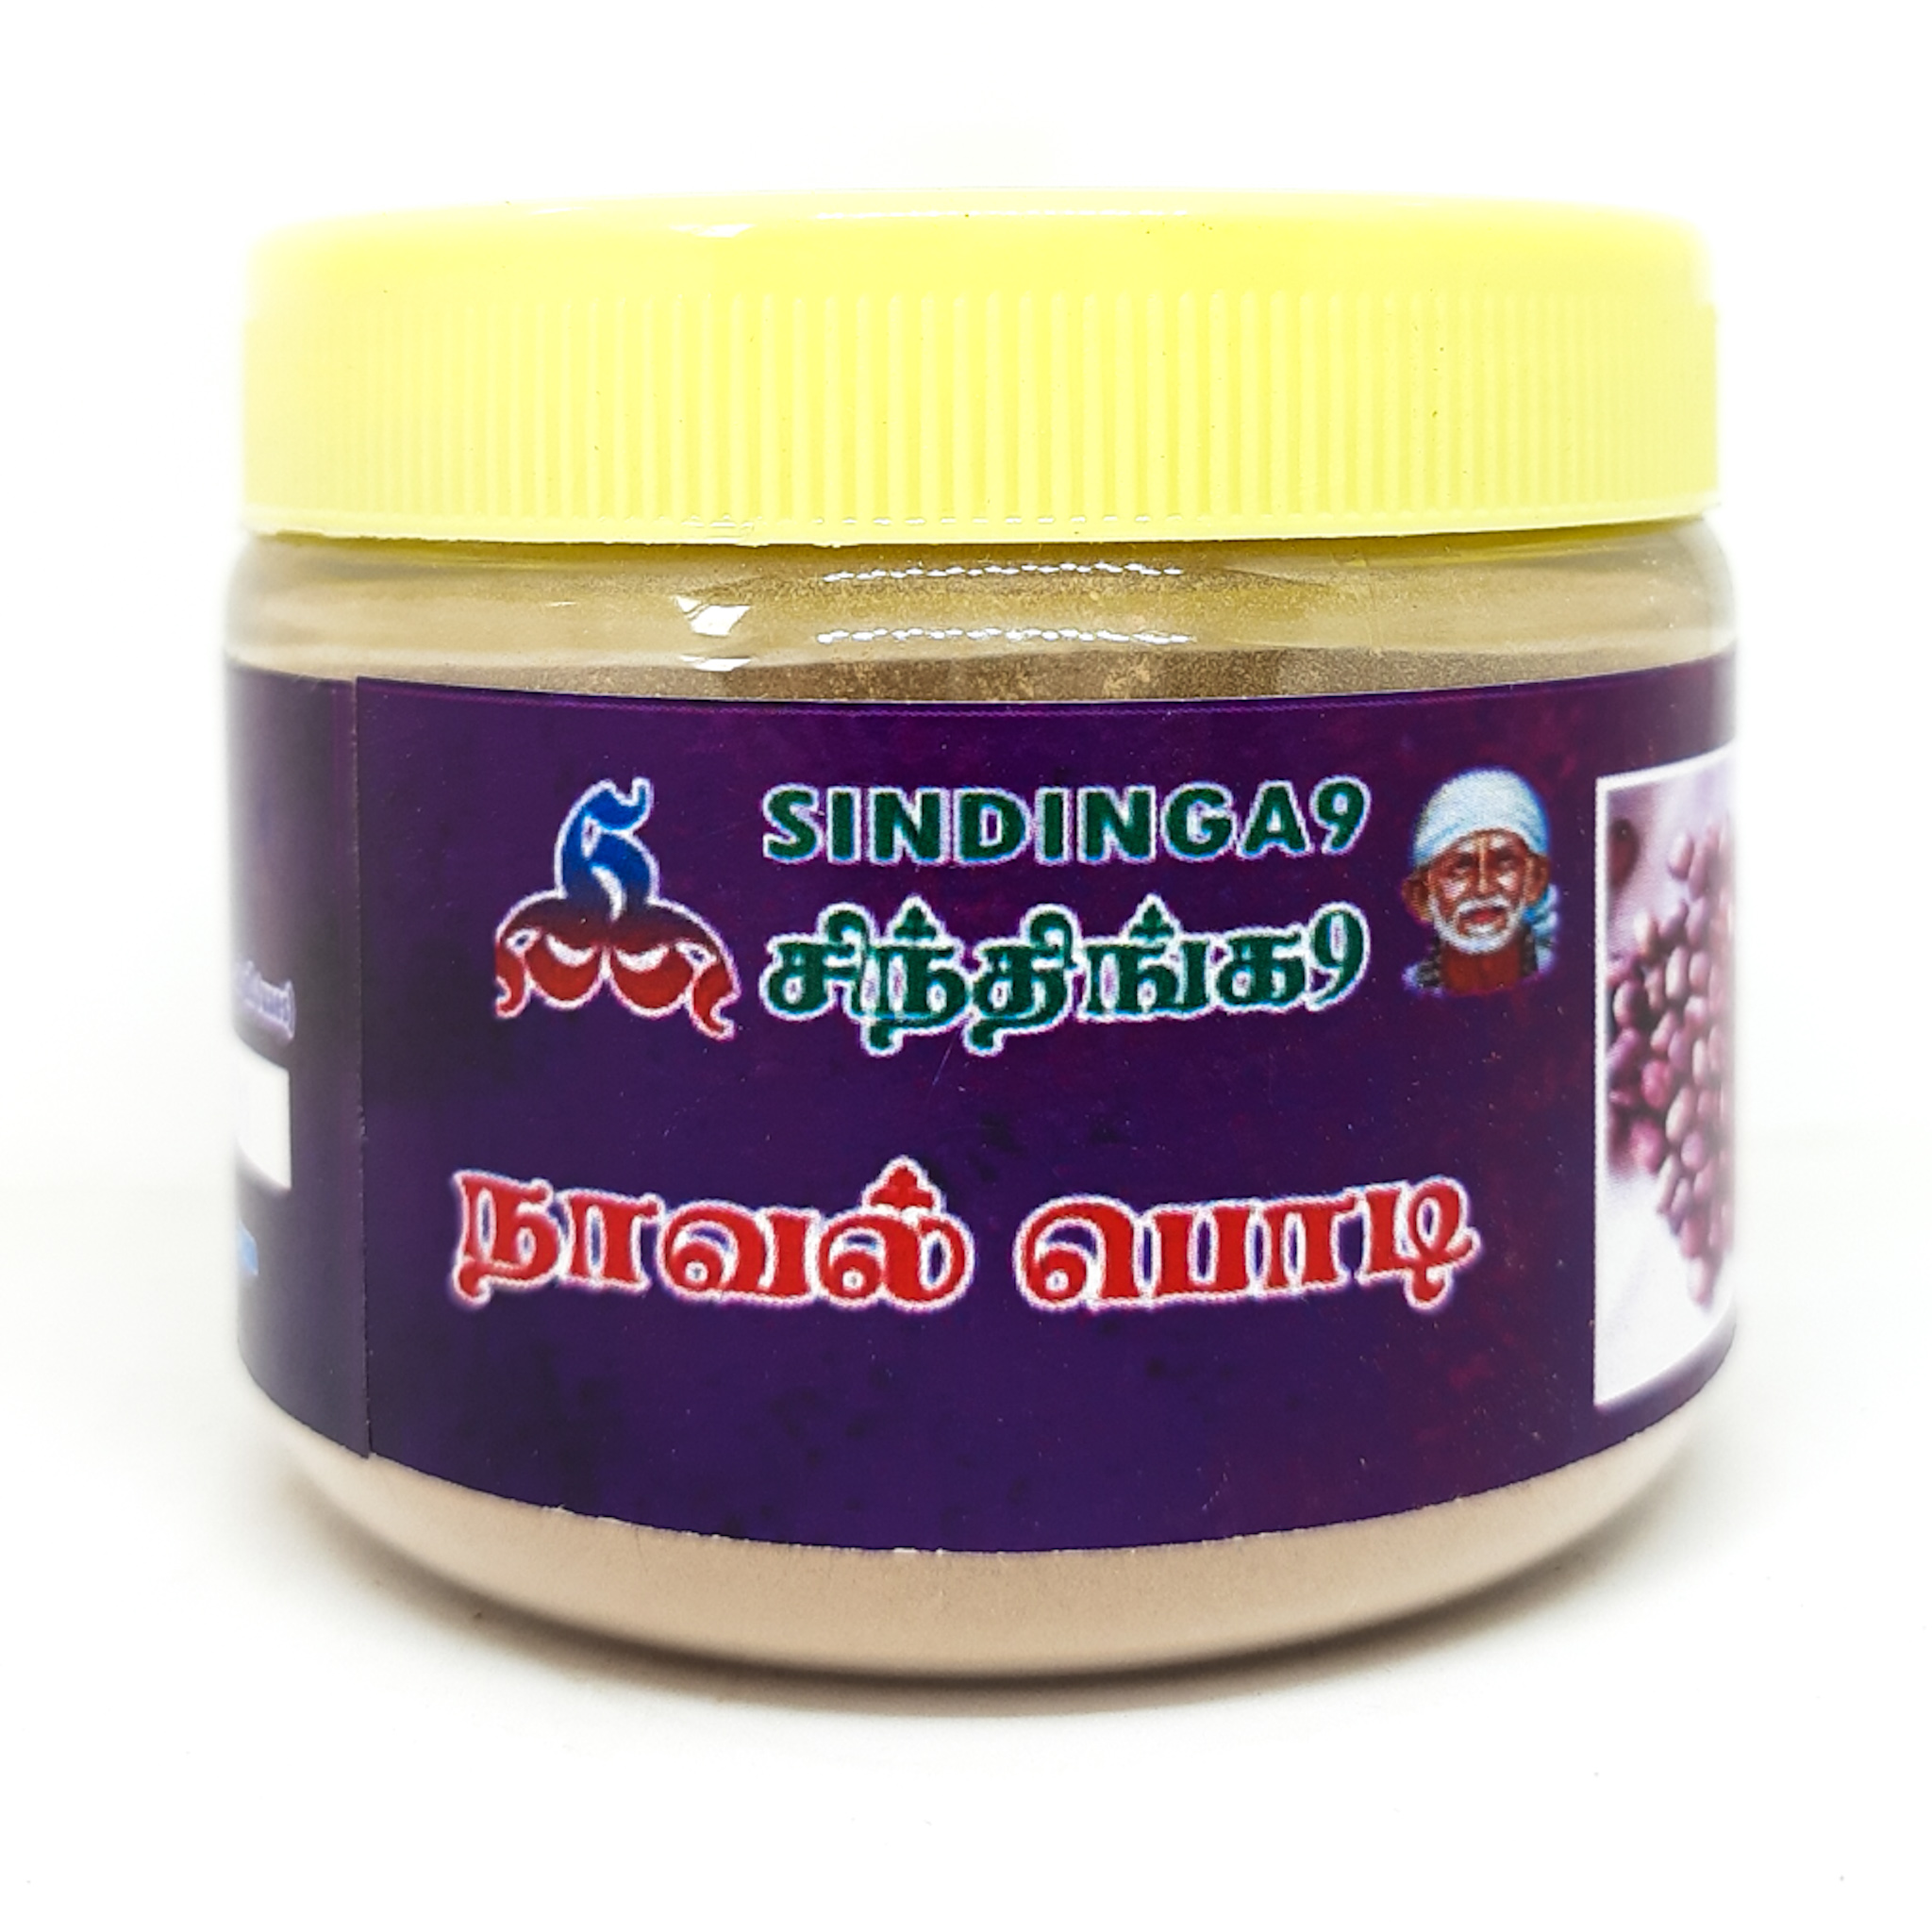 Naval kottai or jamun seed powder